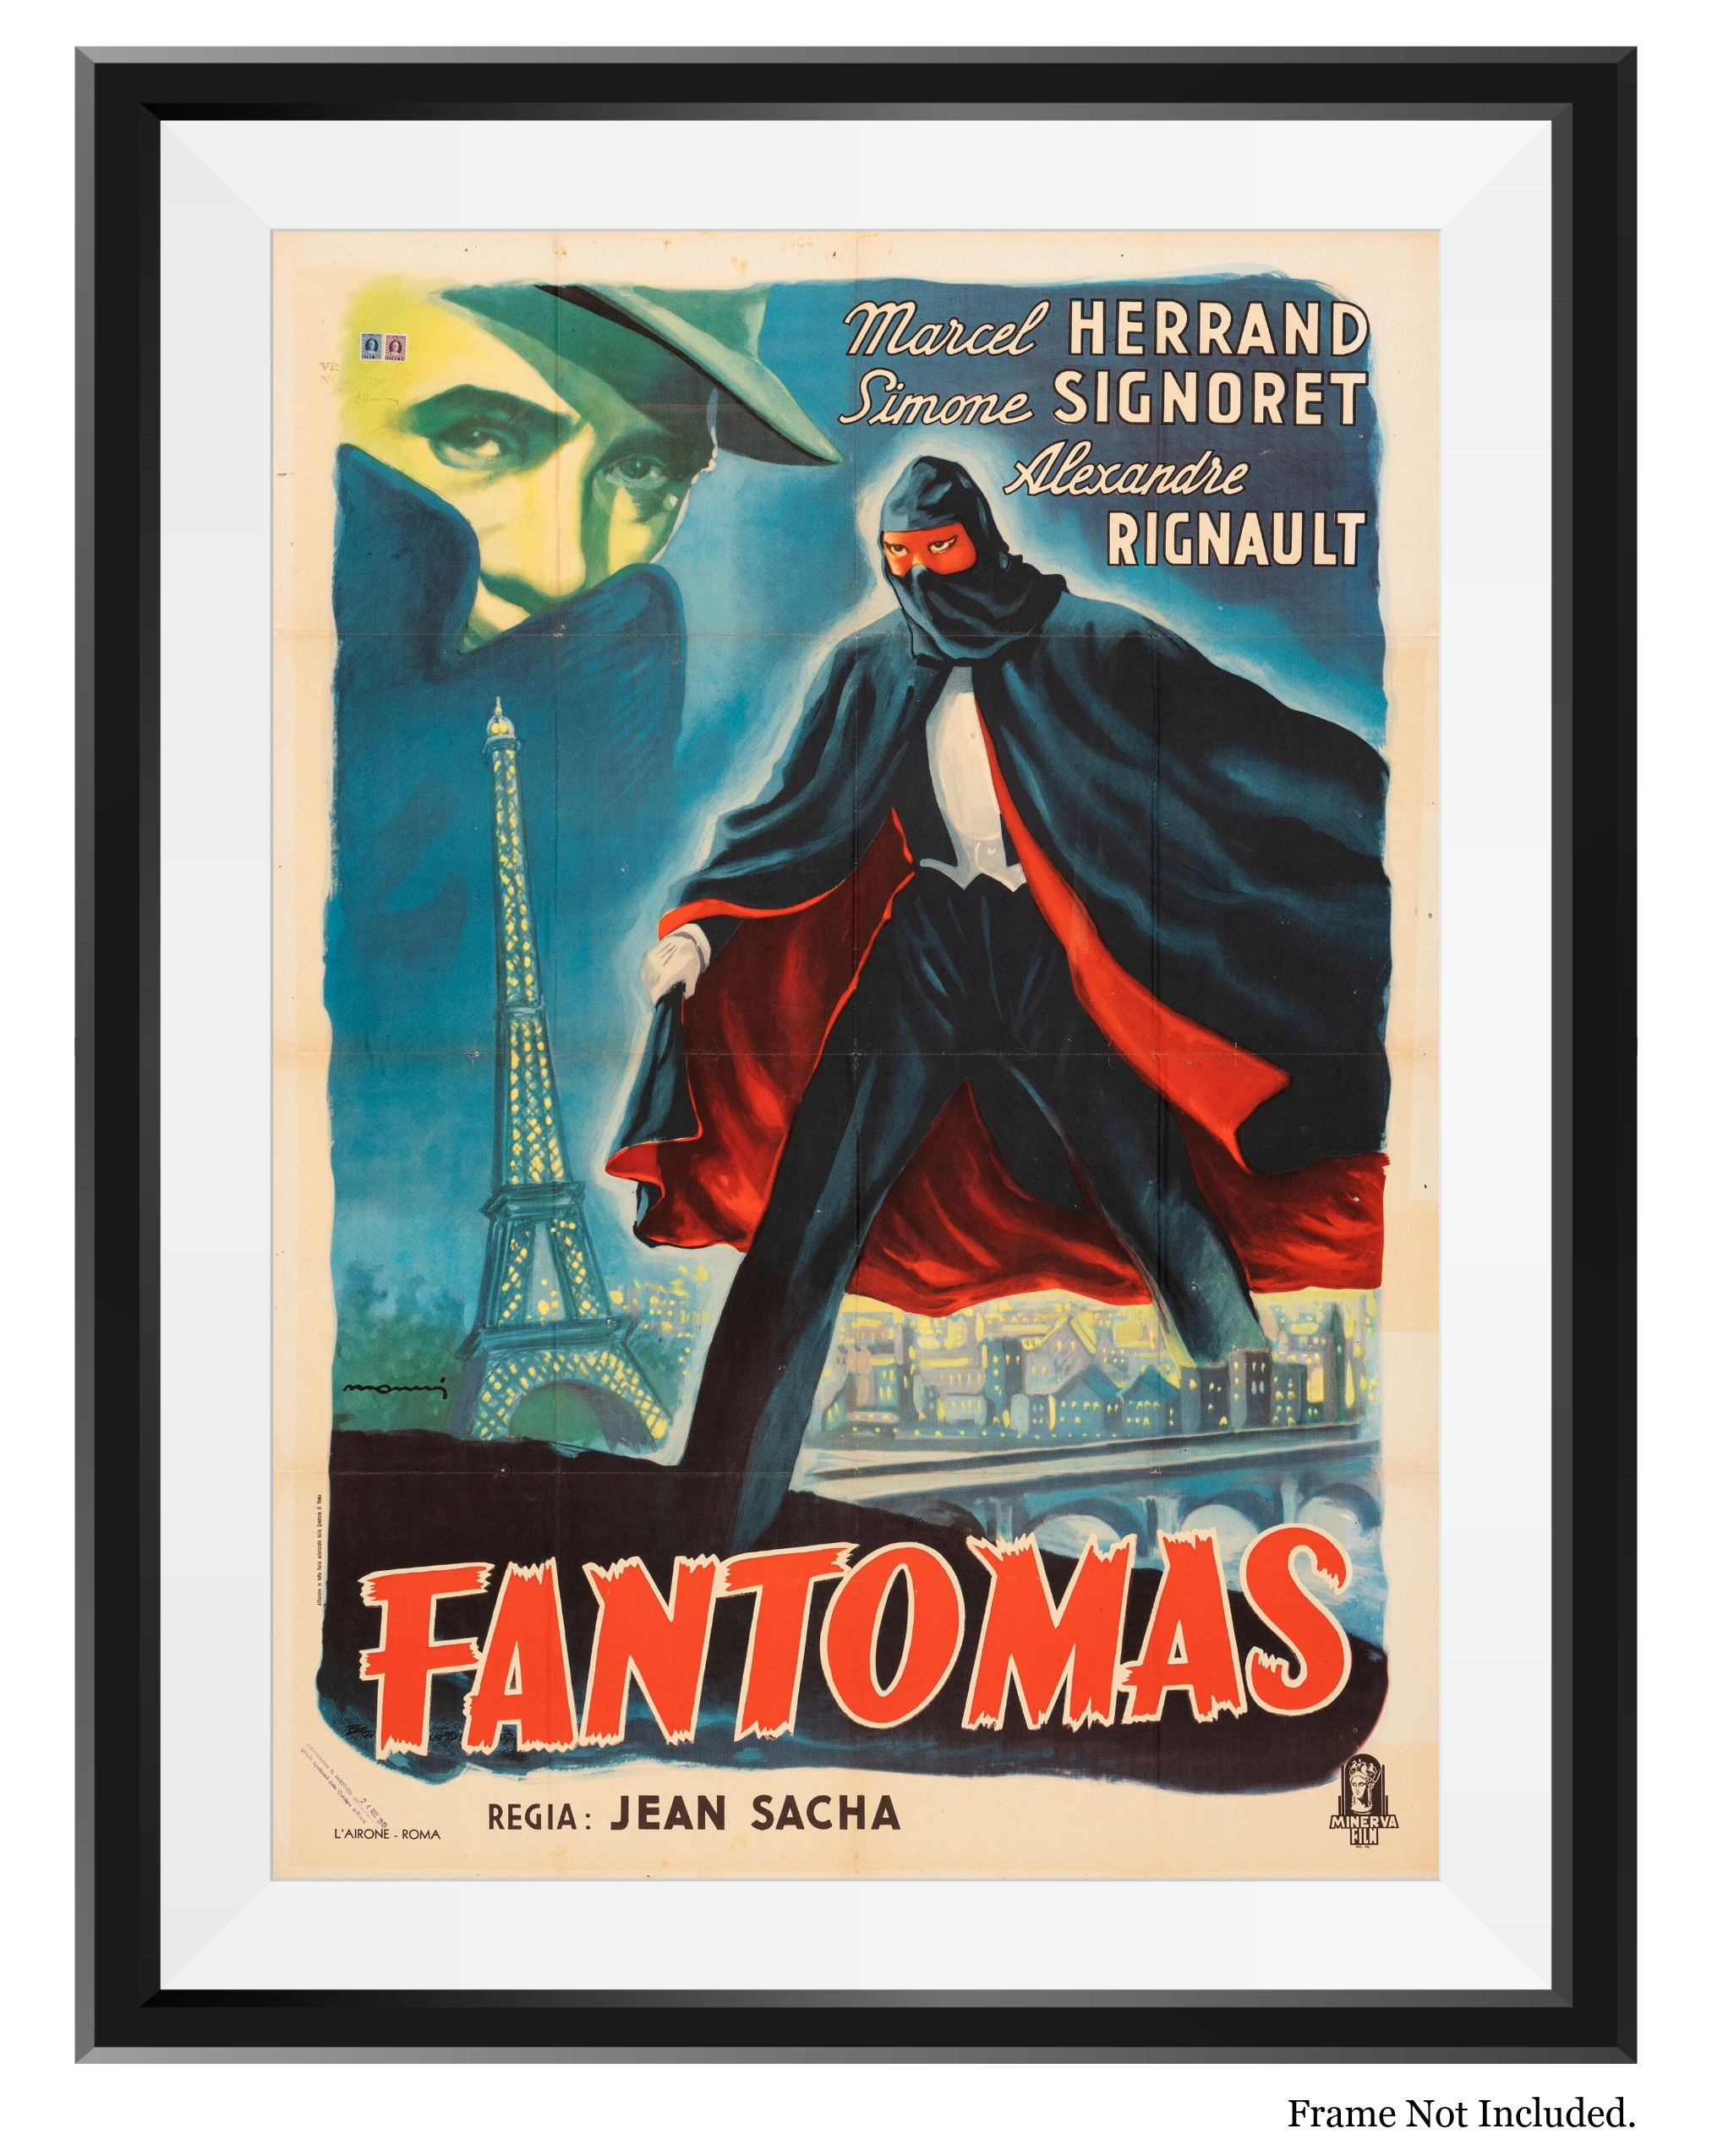 FANTOMAS (1948)